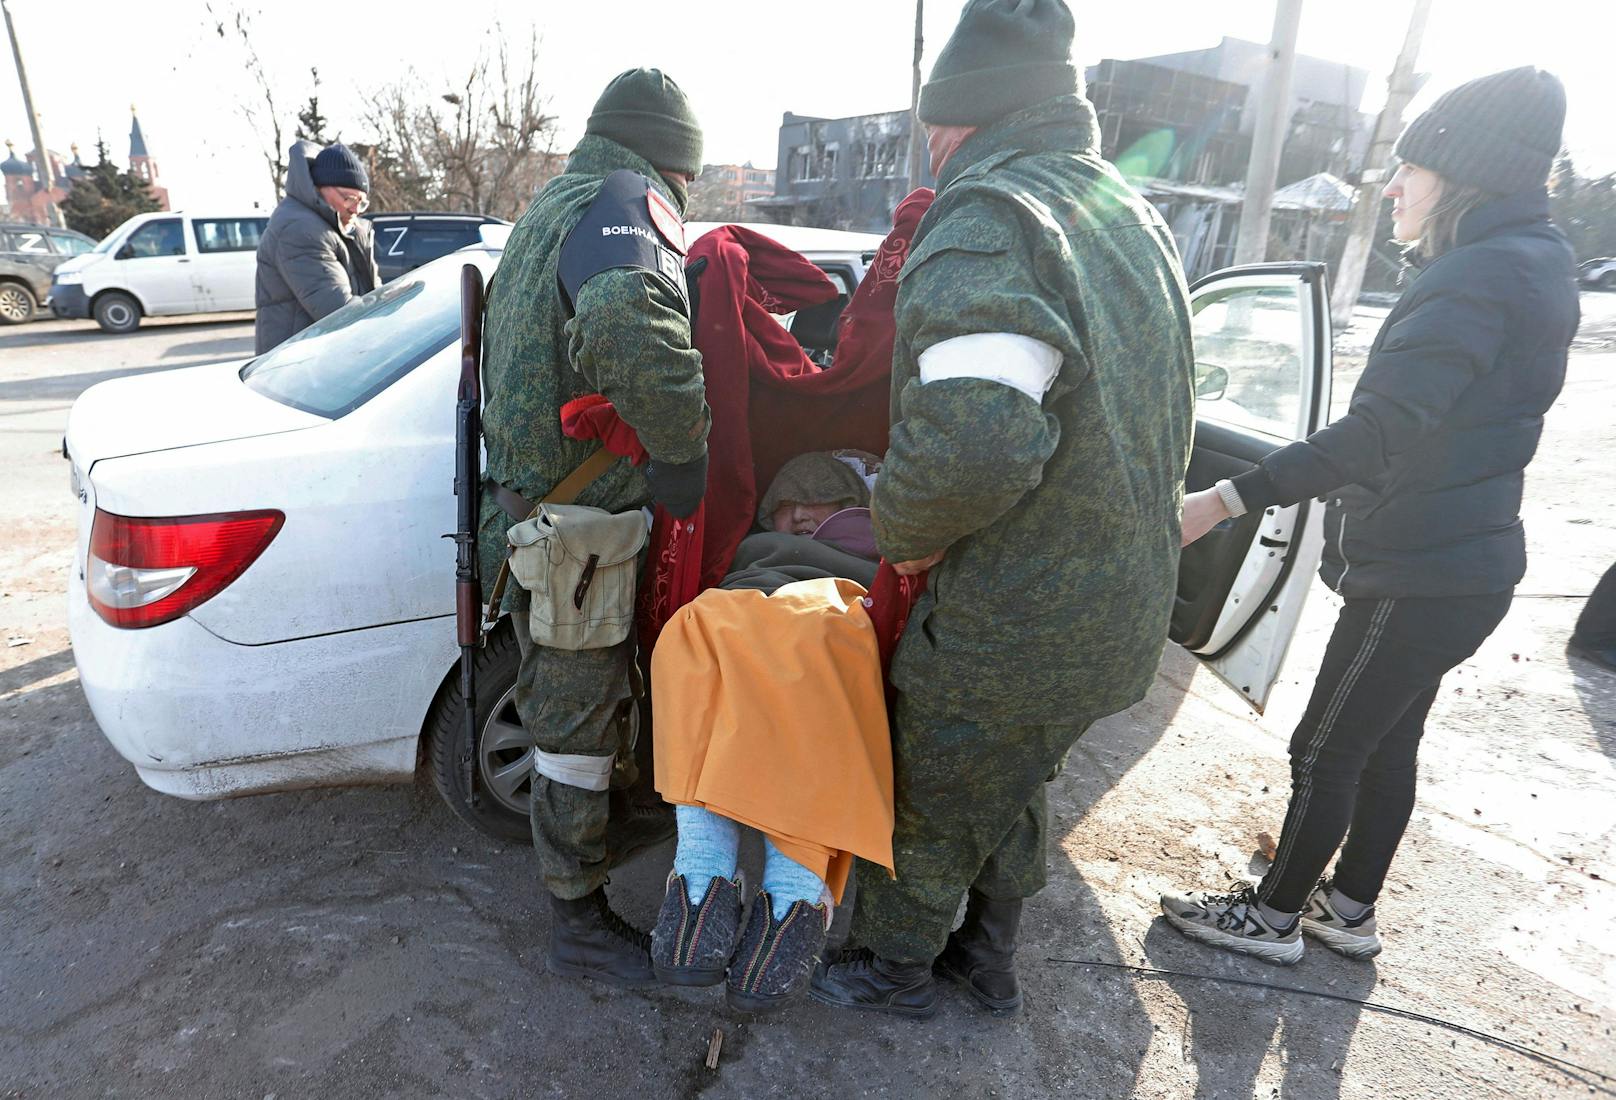 Viele andere fliehen aus der belagerten Stadt. Selbst die pro-russische Kämpfer sind nicht völlig herzlos und helfen betagten Menschen dabei.